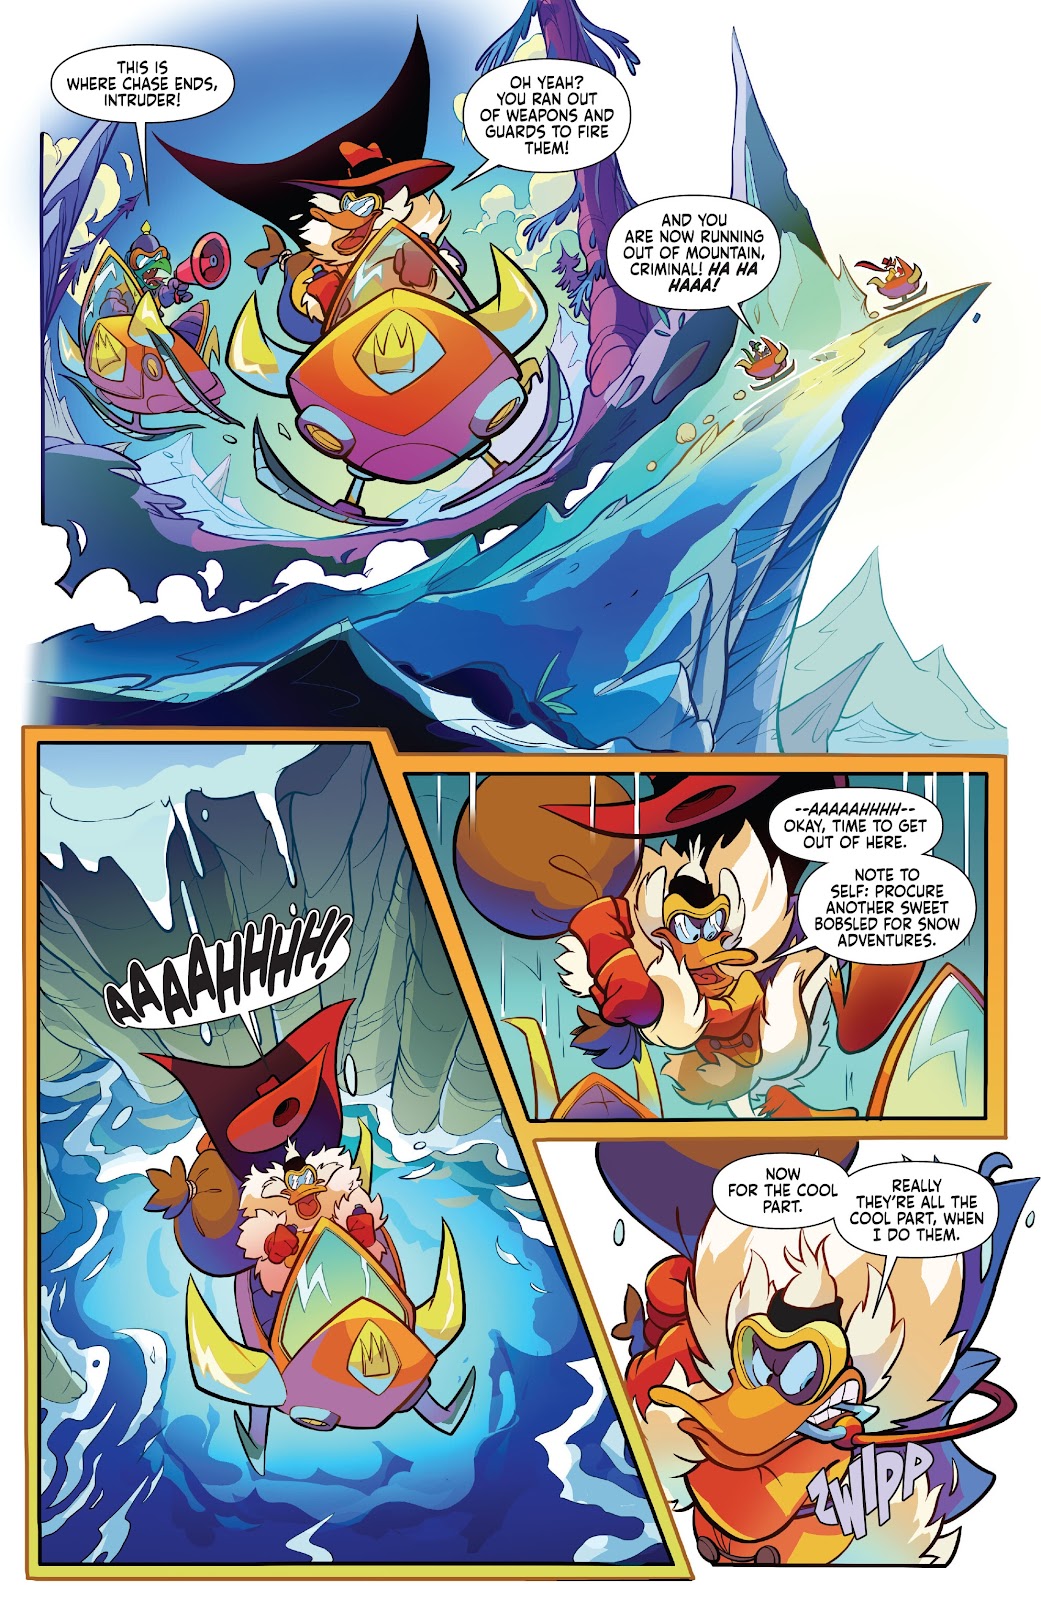 Darkwing Duck: Negaduck issue 5 - Page 10